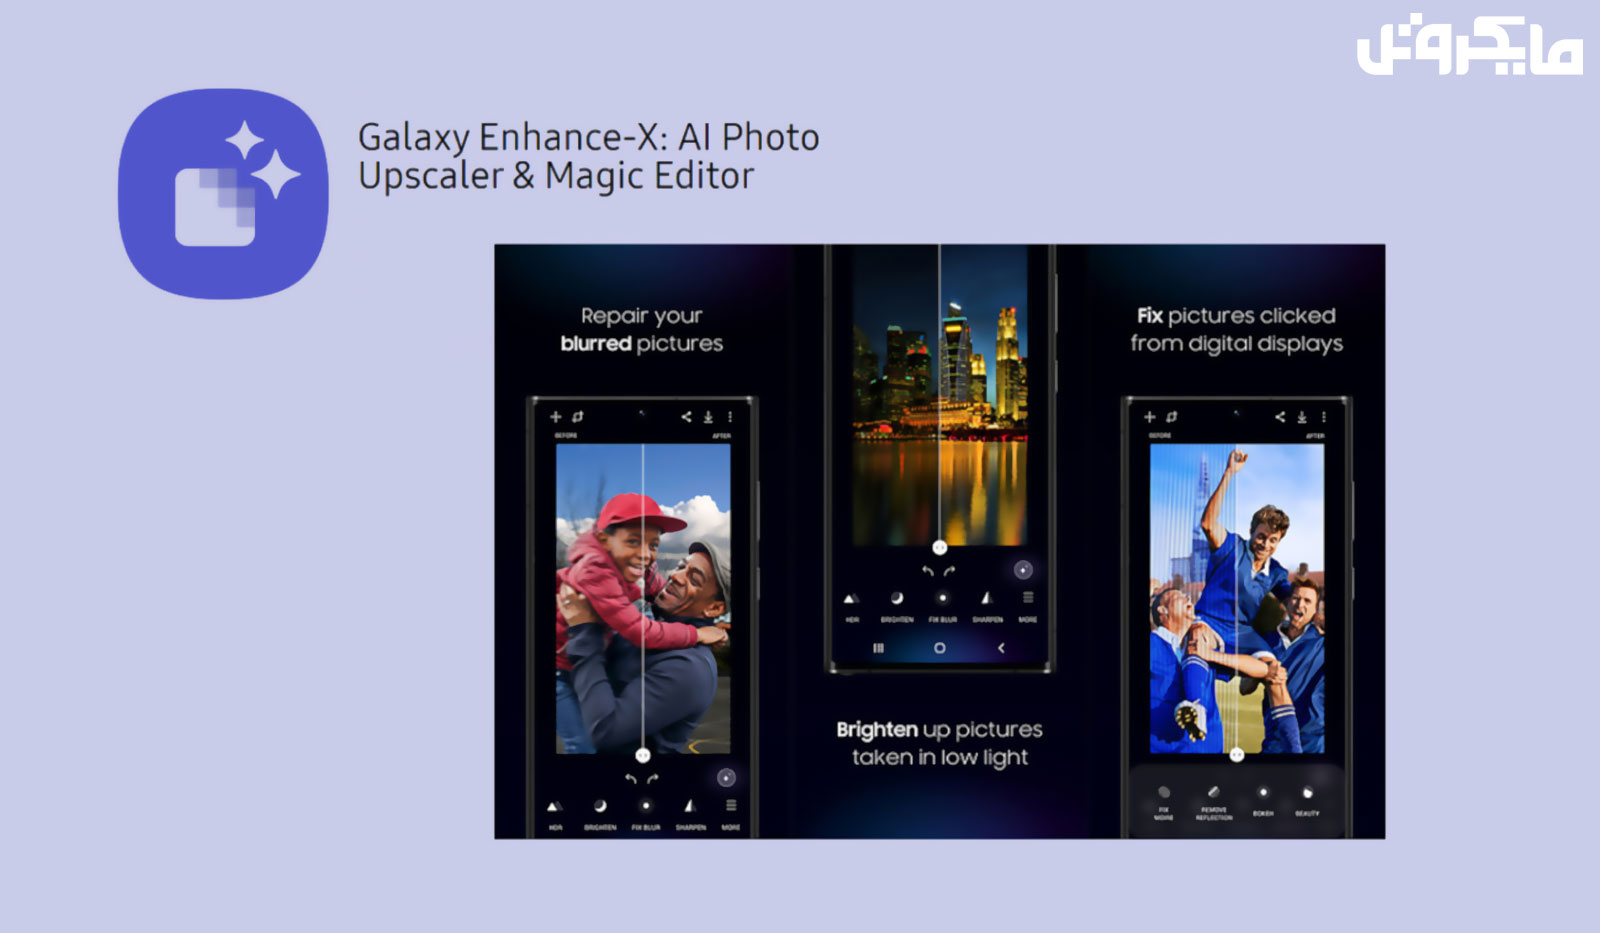 سامسونگ اپ ویرایش تصویر Galaxy Enhance-X را با تکیه بر هوش مصنوعی منتشر کرد